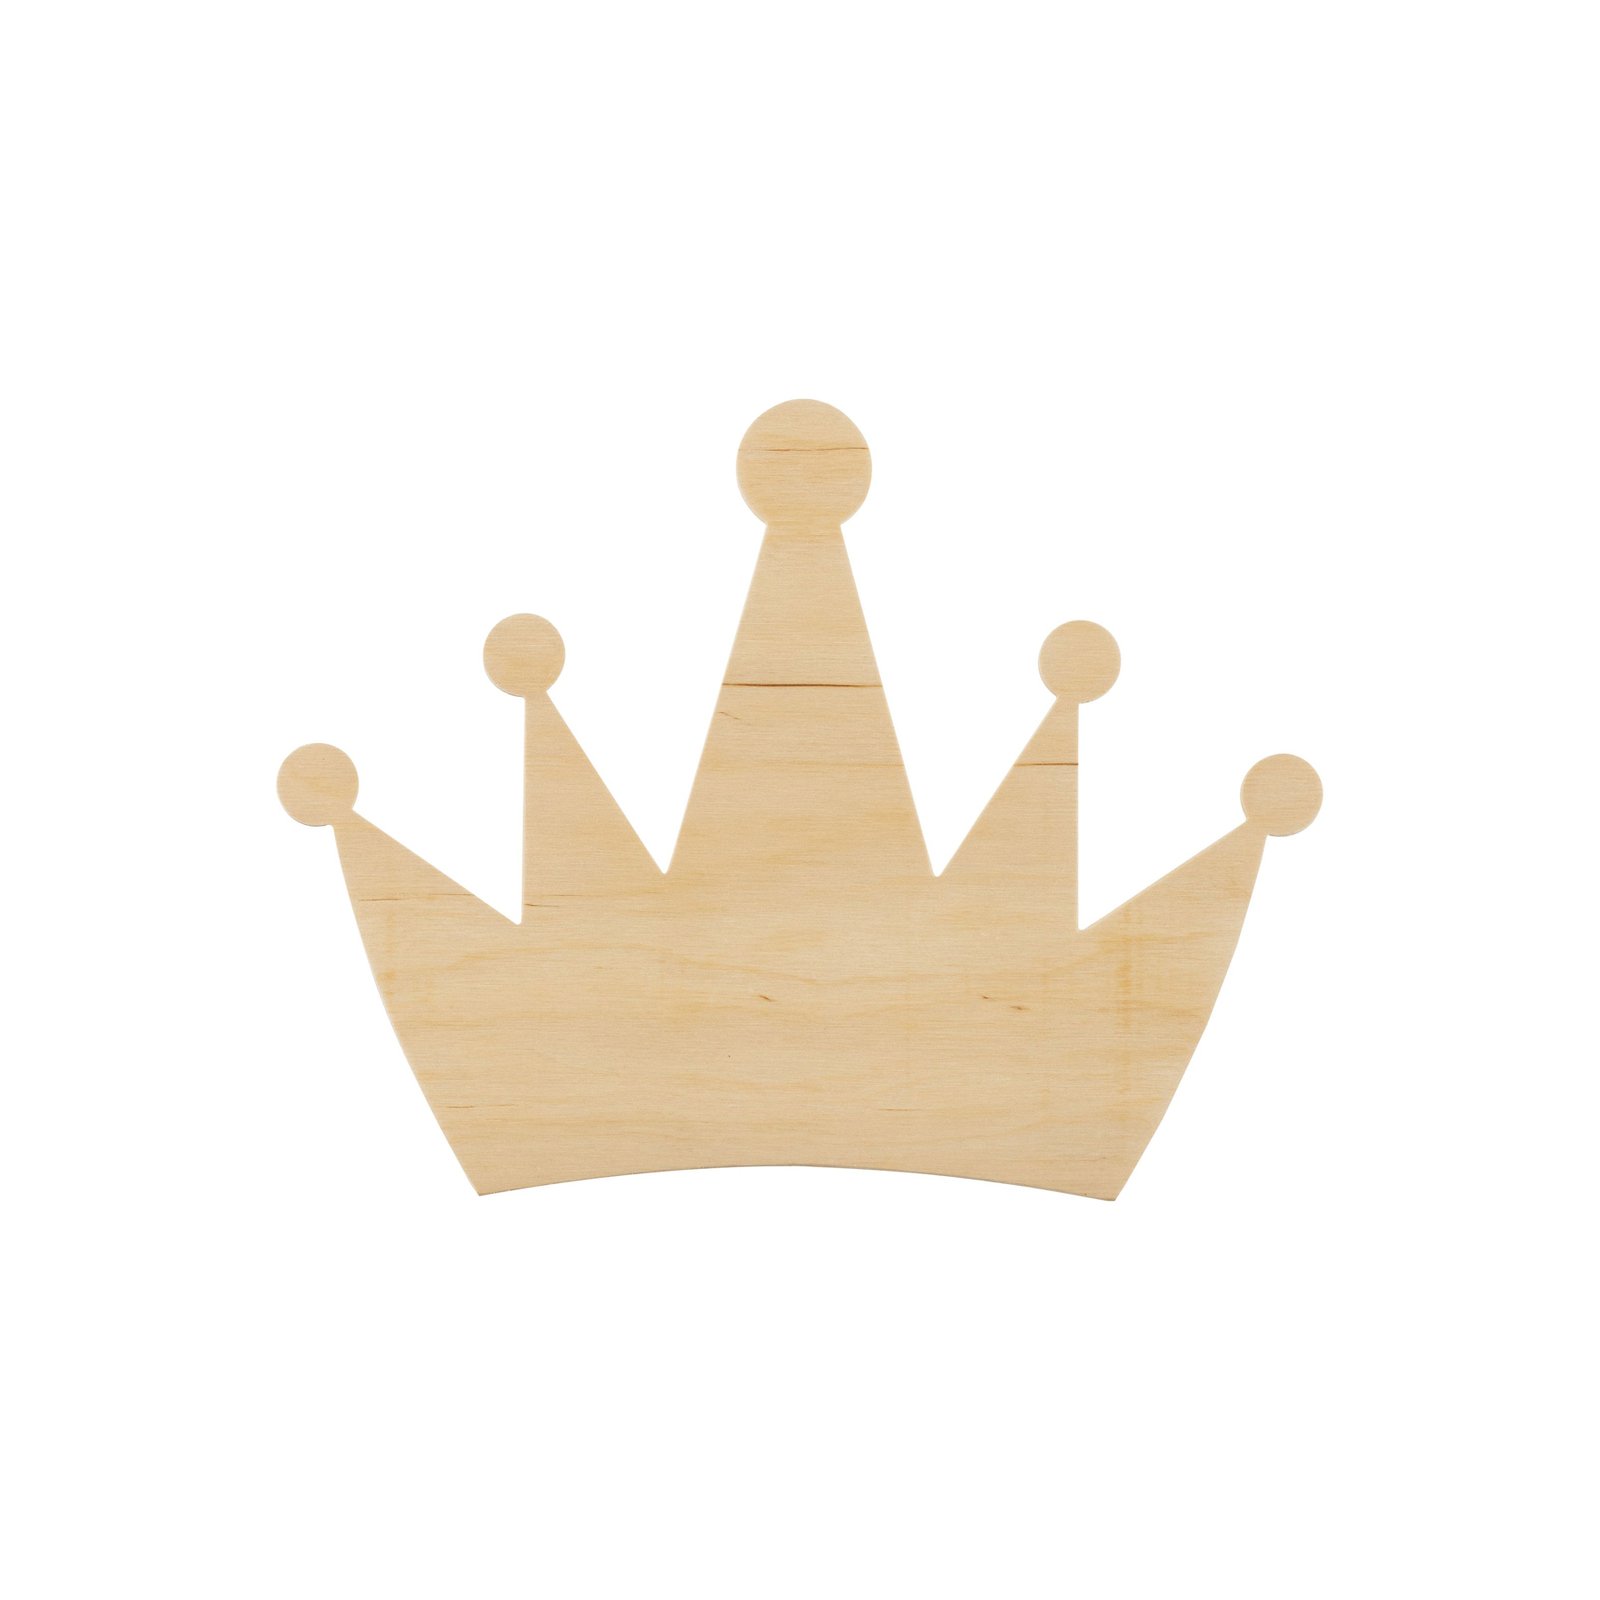 Wandleuchte Queen, aus Holz, mit Stecker und Schalter